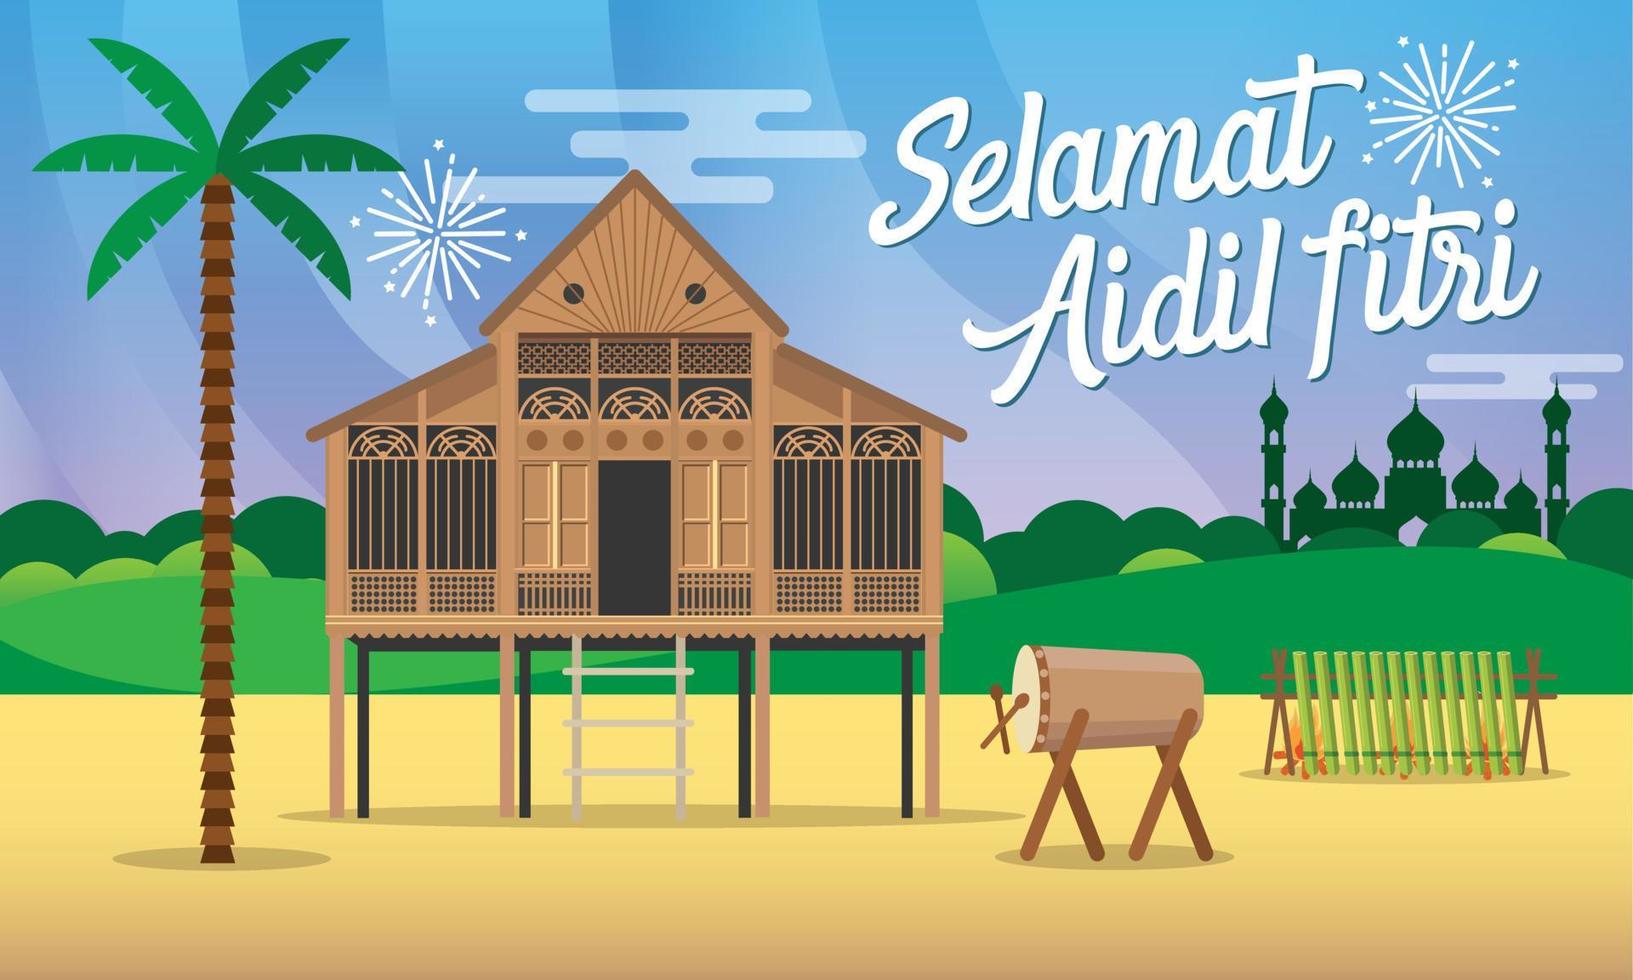 cartão de saudação selamat hari raya aidil fitri em ilustração vetorial de estilo simples com casa de aldeia tradicional malaia vetor